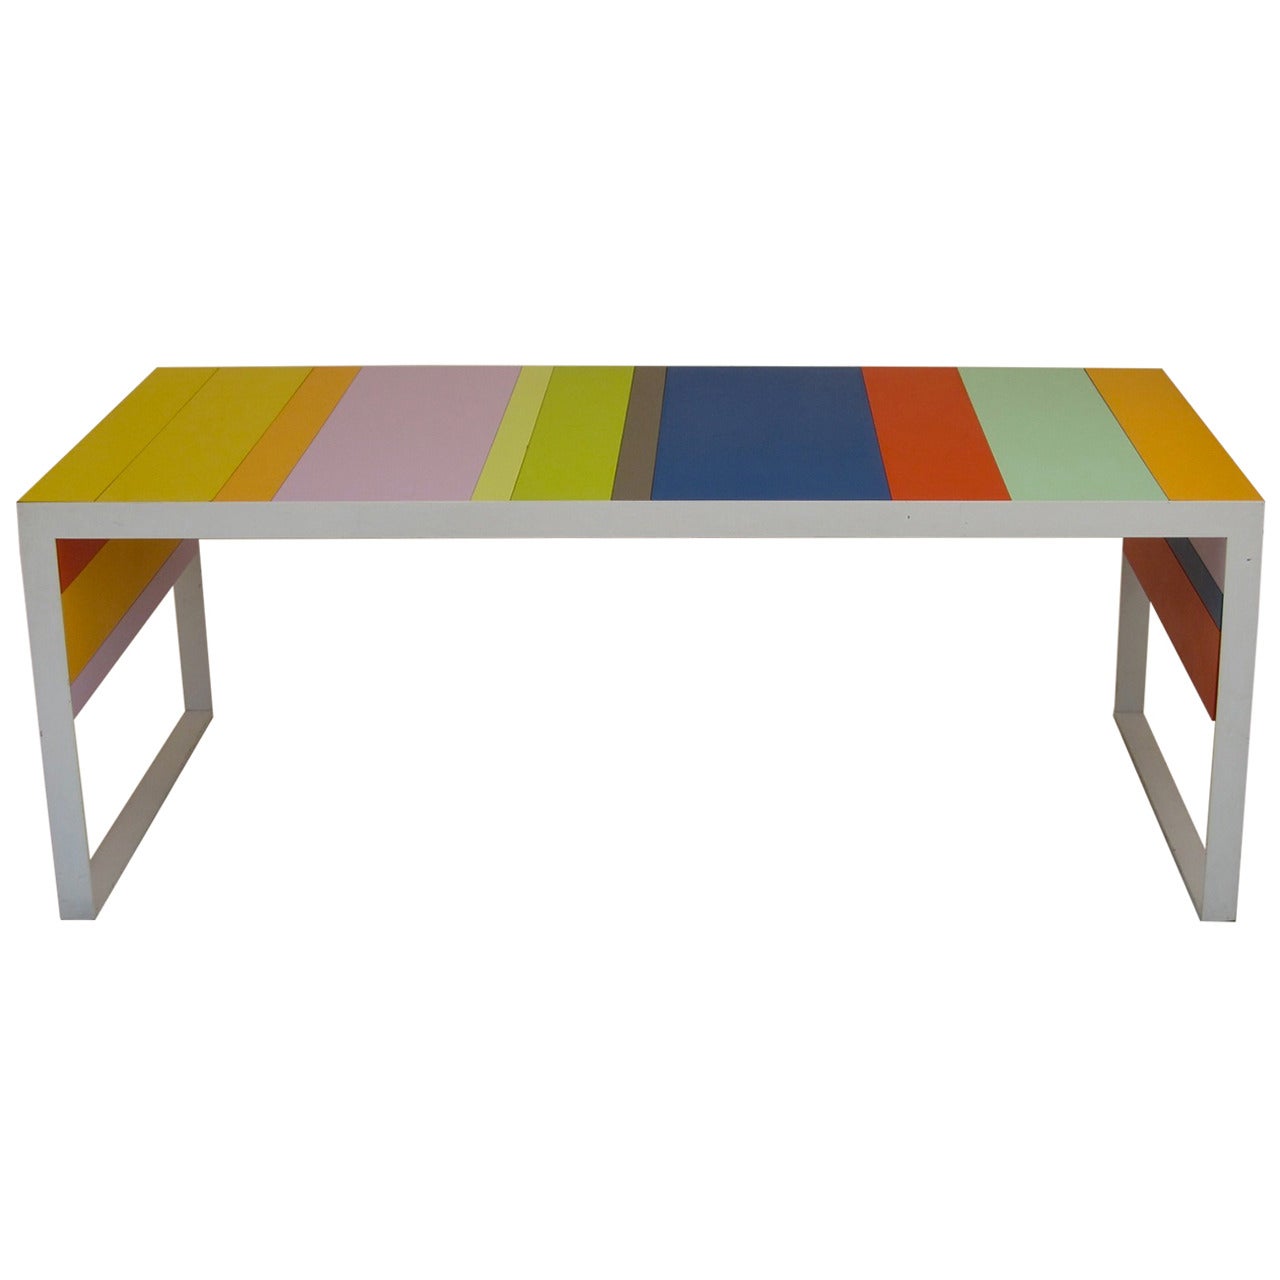 Italian Multicolored Desk For Sale